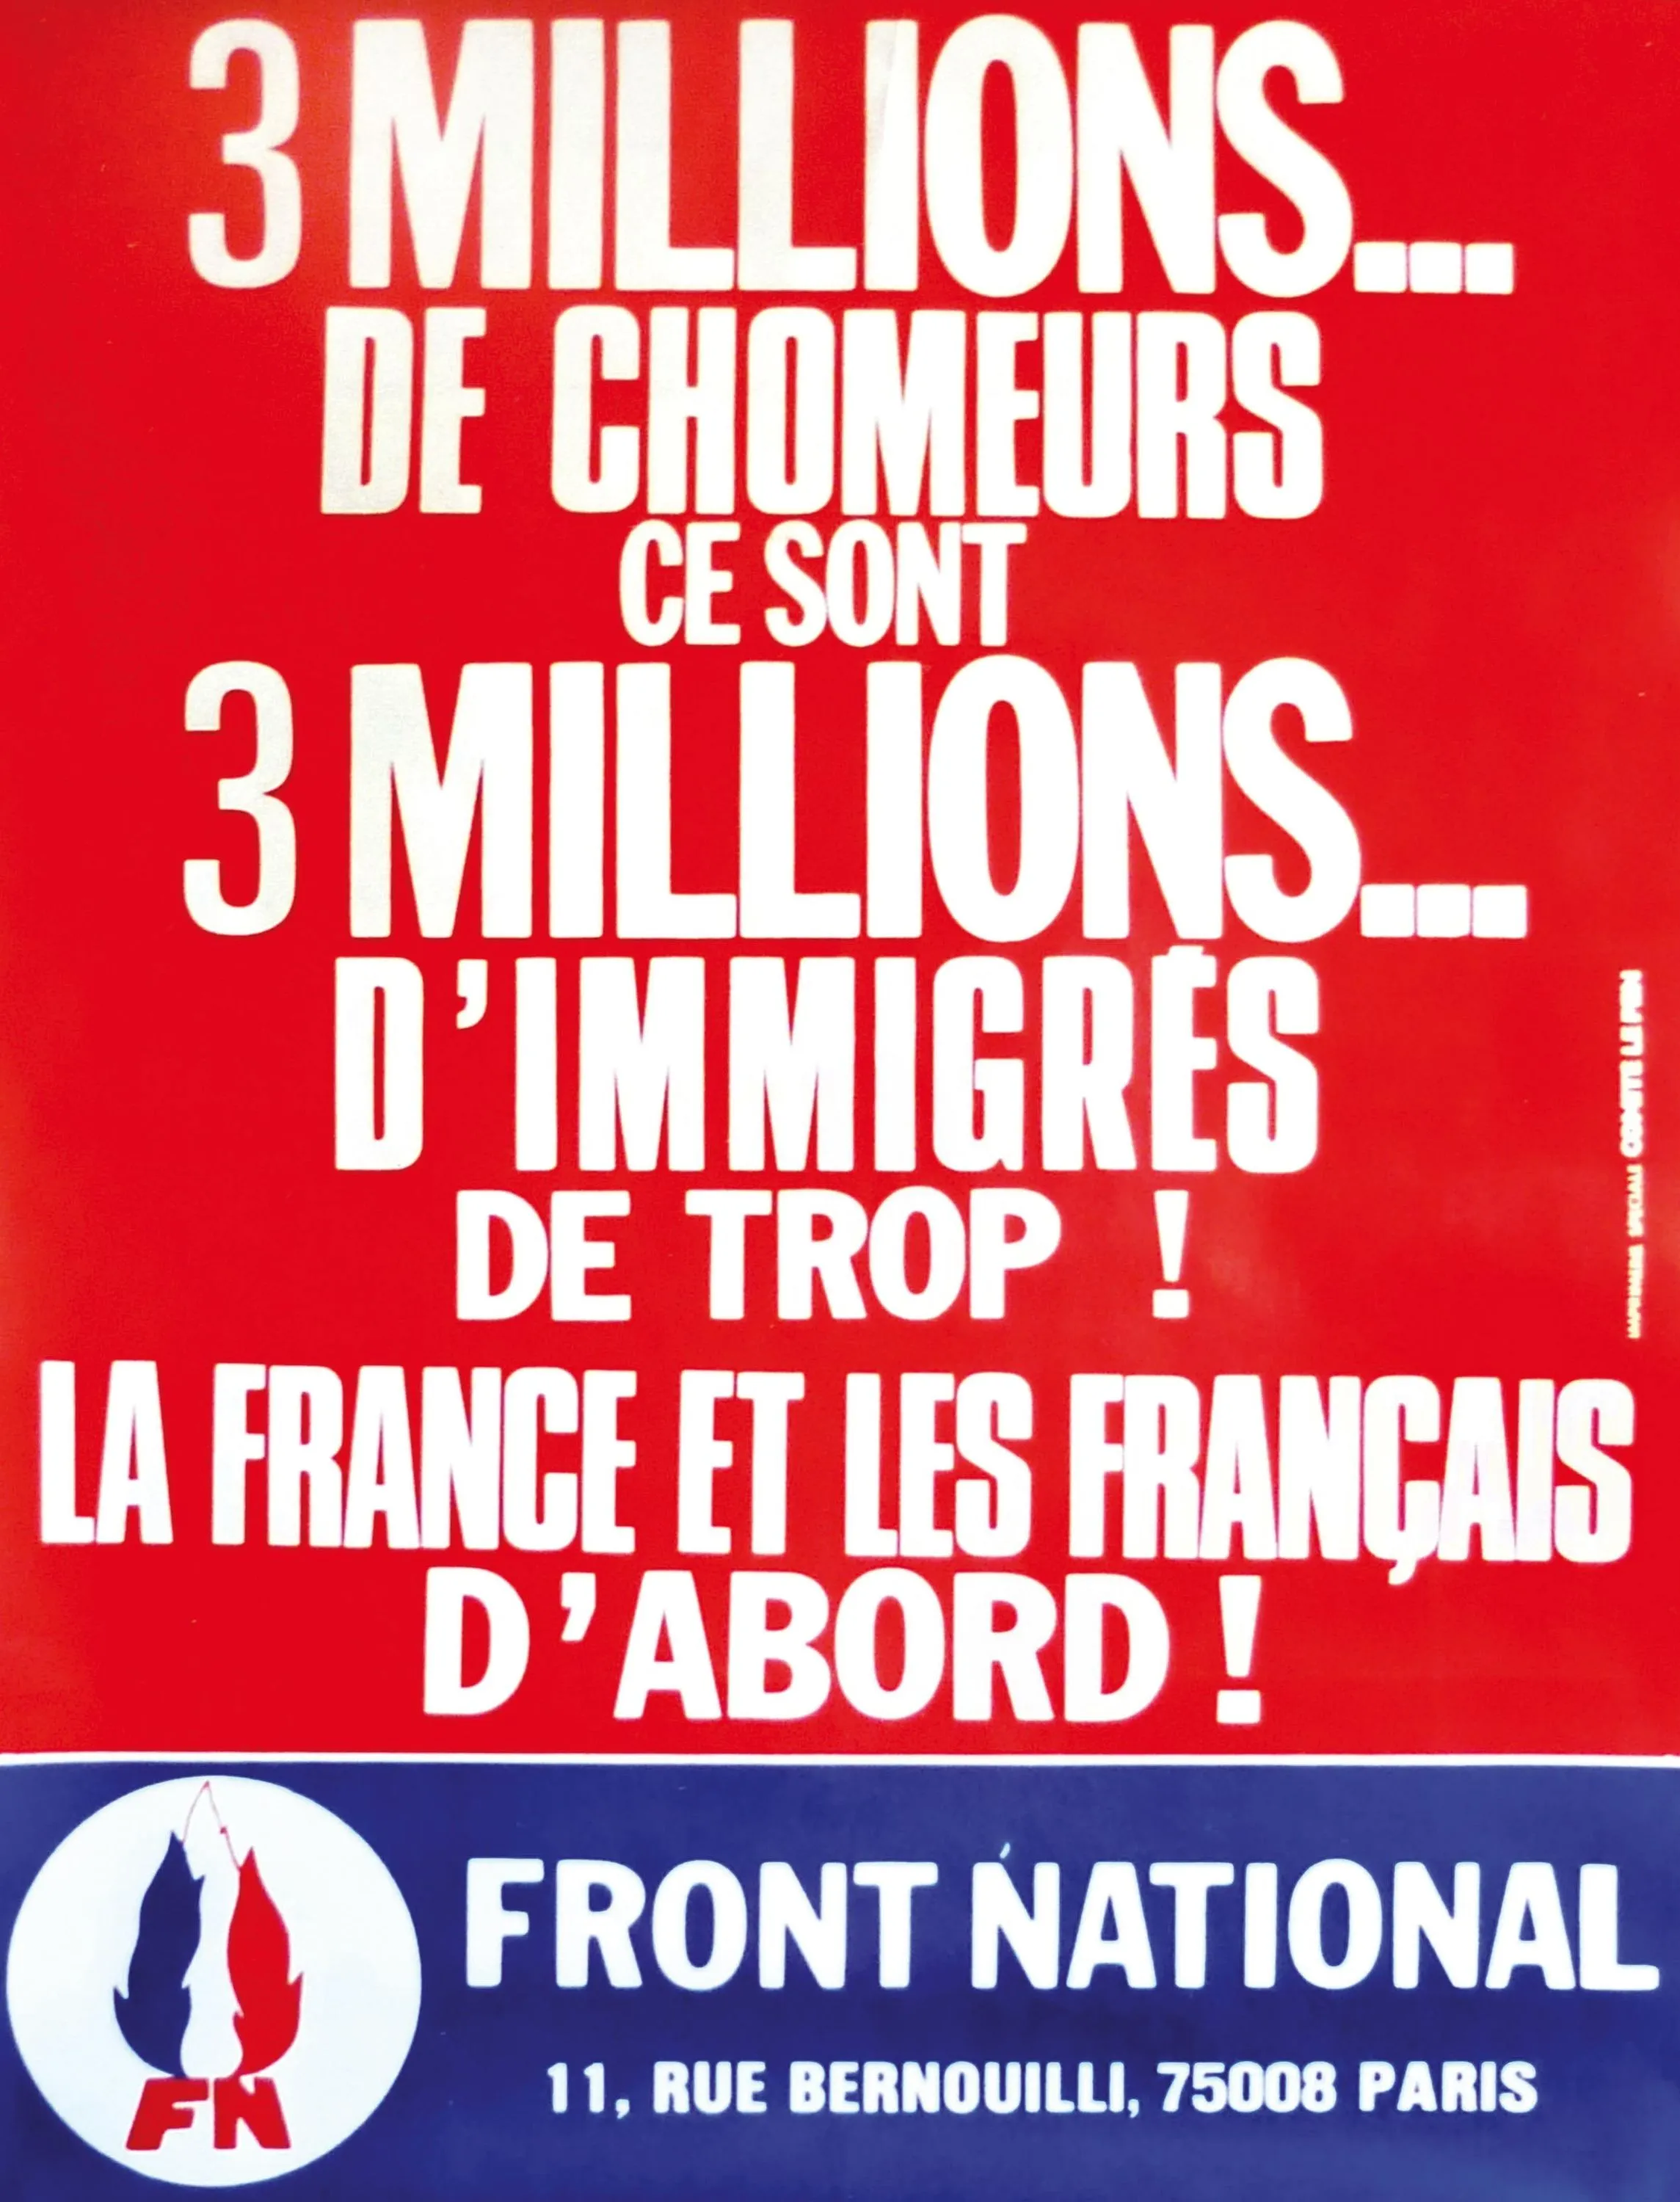 Affiche du Front national.